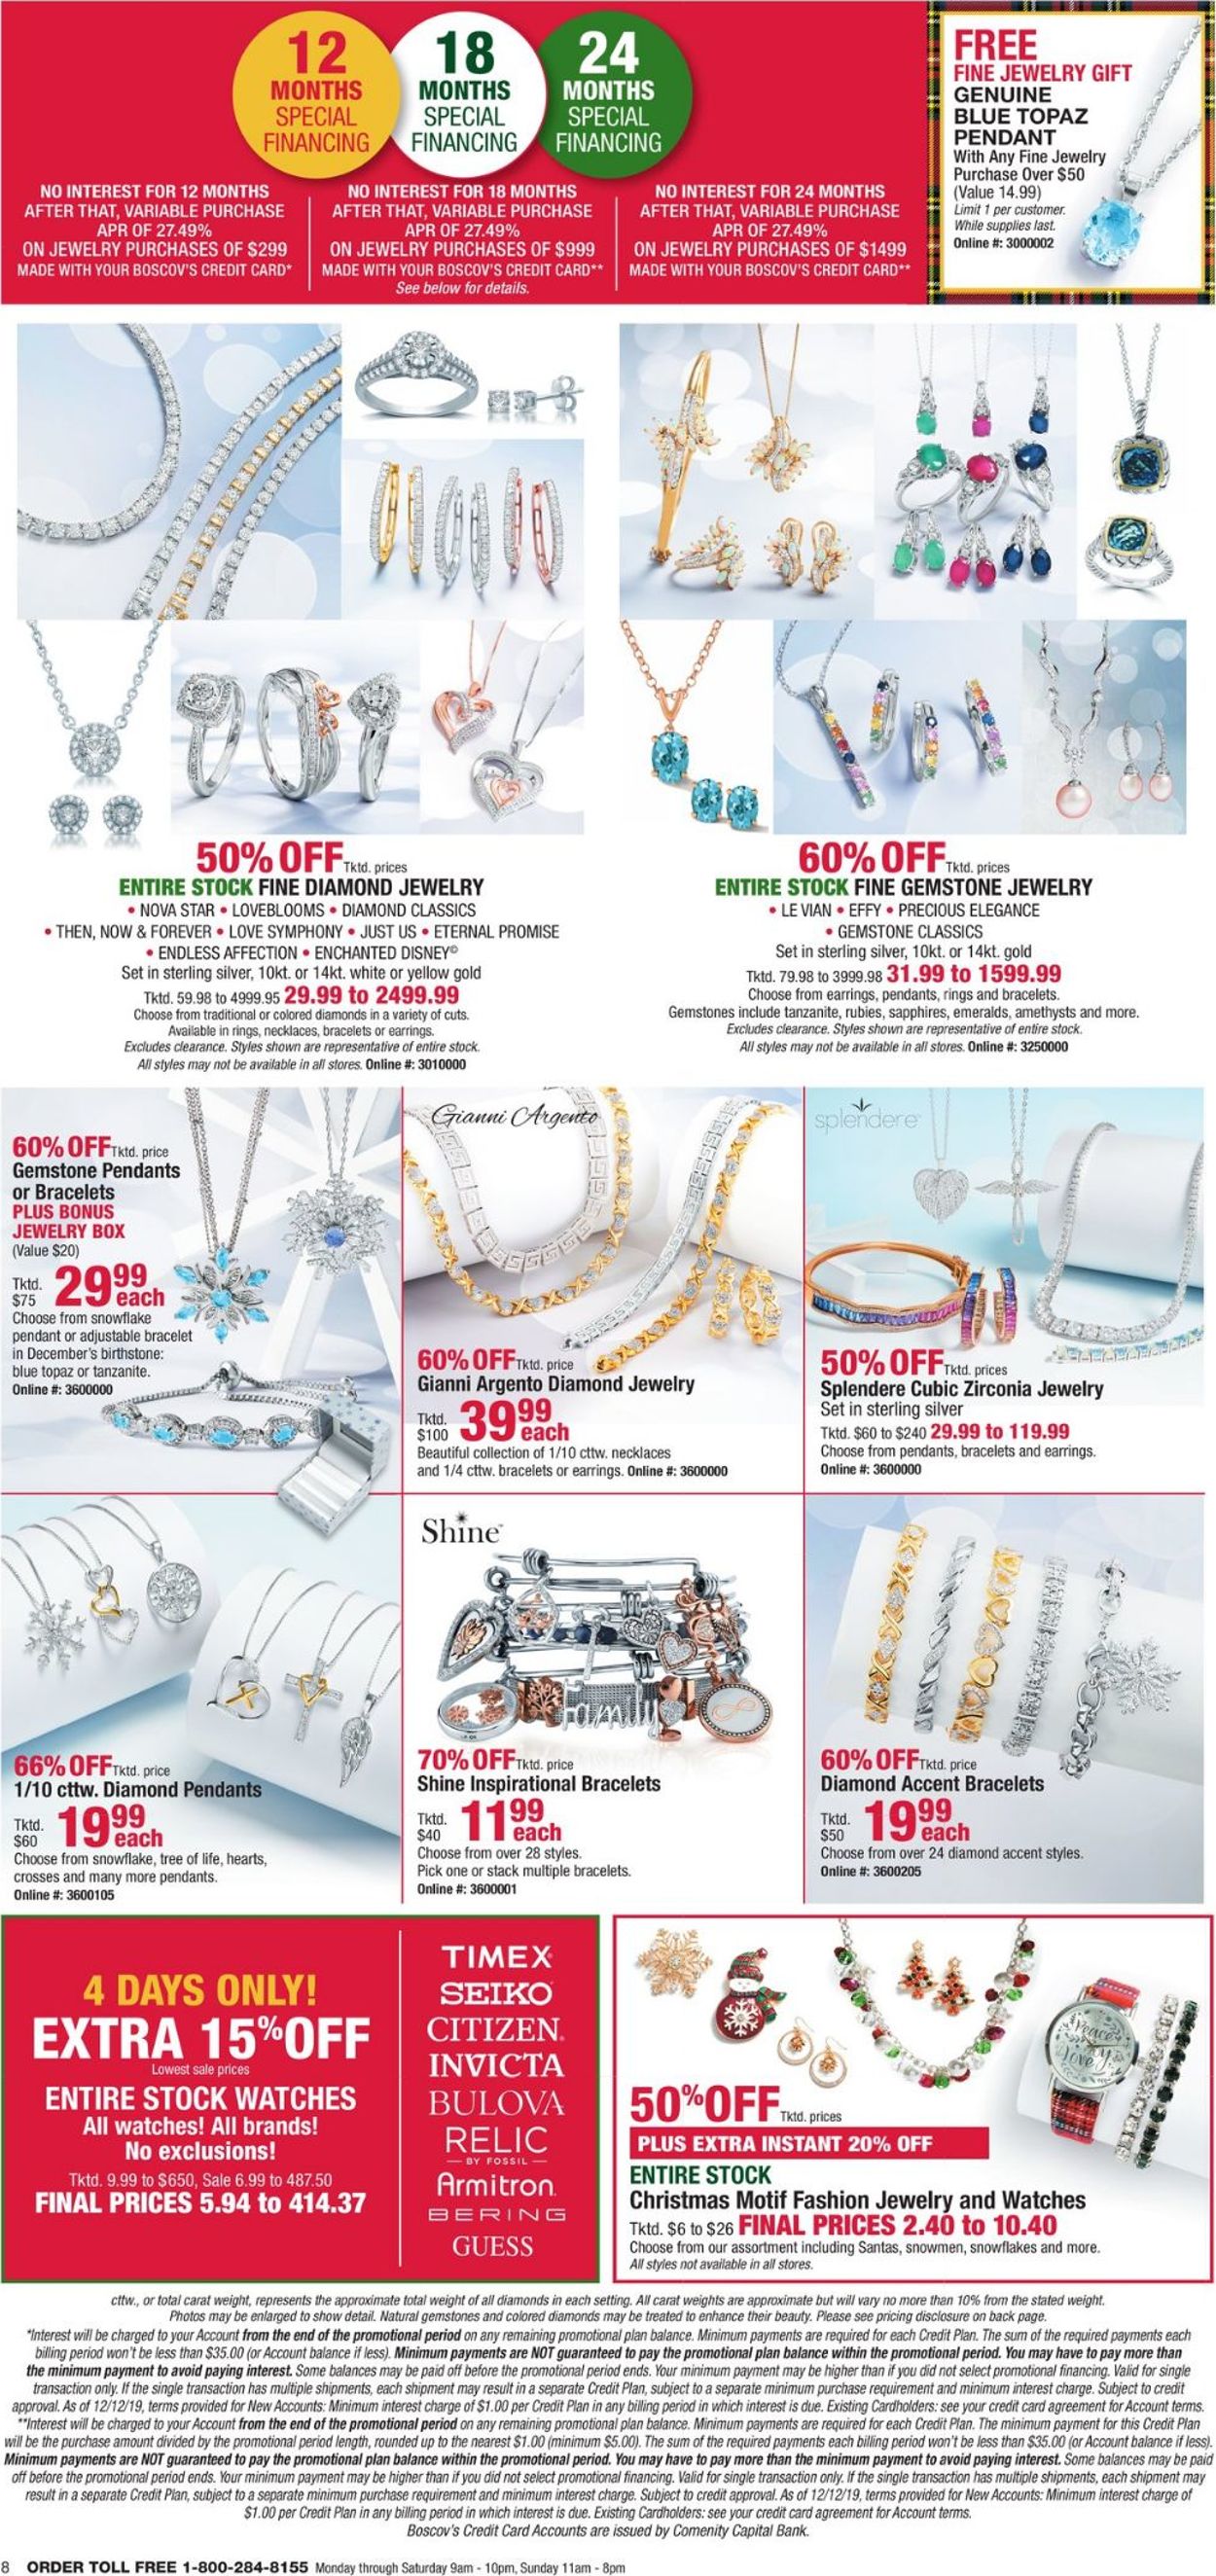 Catalogue Boscov's - Holiday Ad 2019 from 12/12/2019